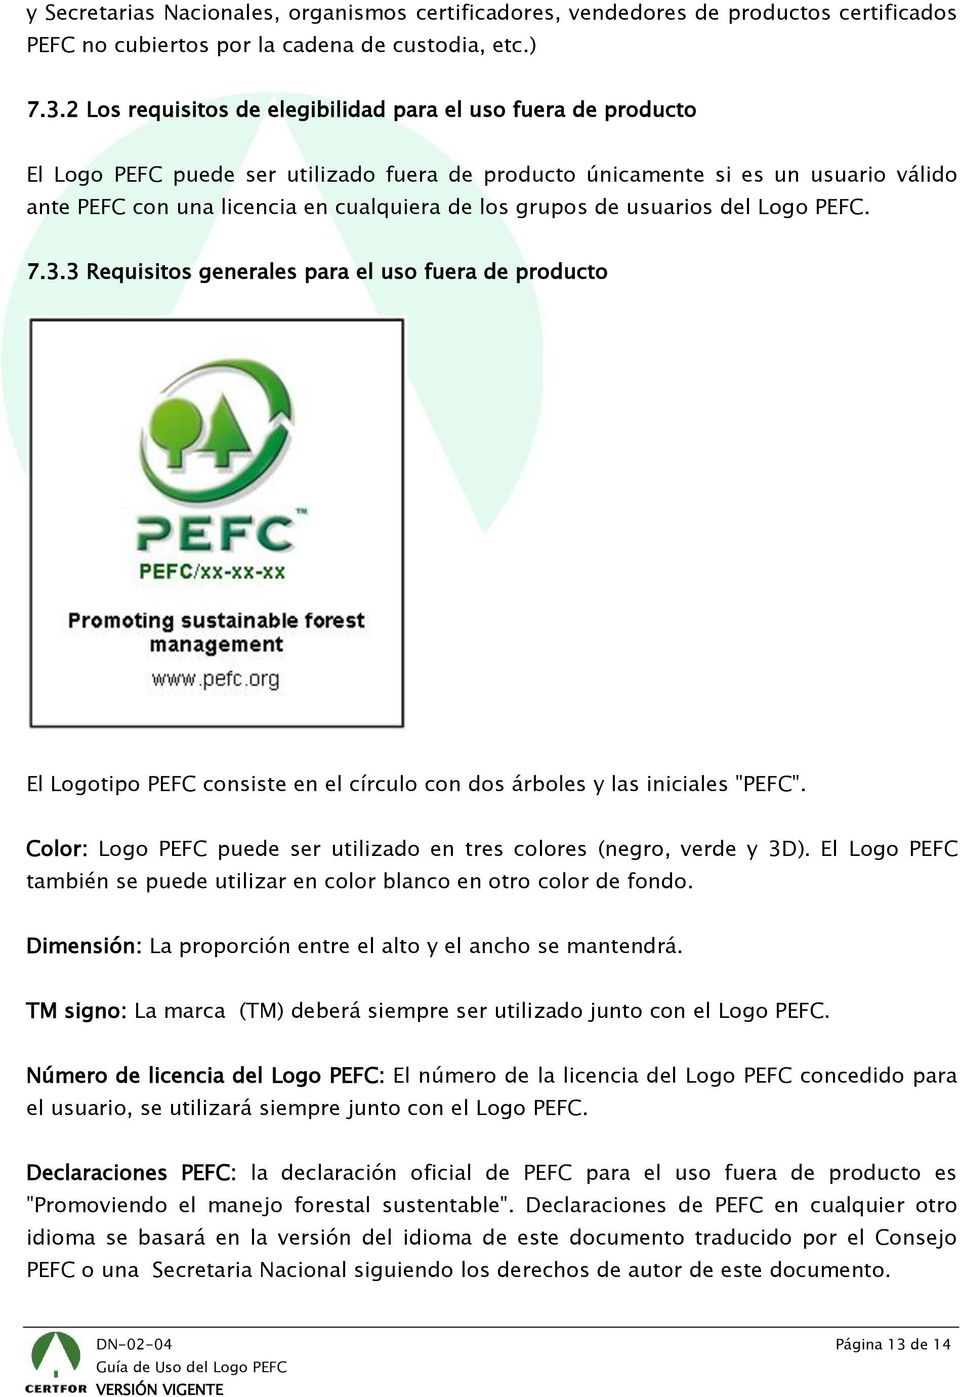 grupos de usuarios del Logo PEFC. 7.3.3 Requisitos generales para el uso fuera de producto El Logotipo PEFC consiste en el círculo con dos árboles y las iniciales "PEFC".